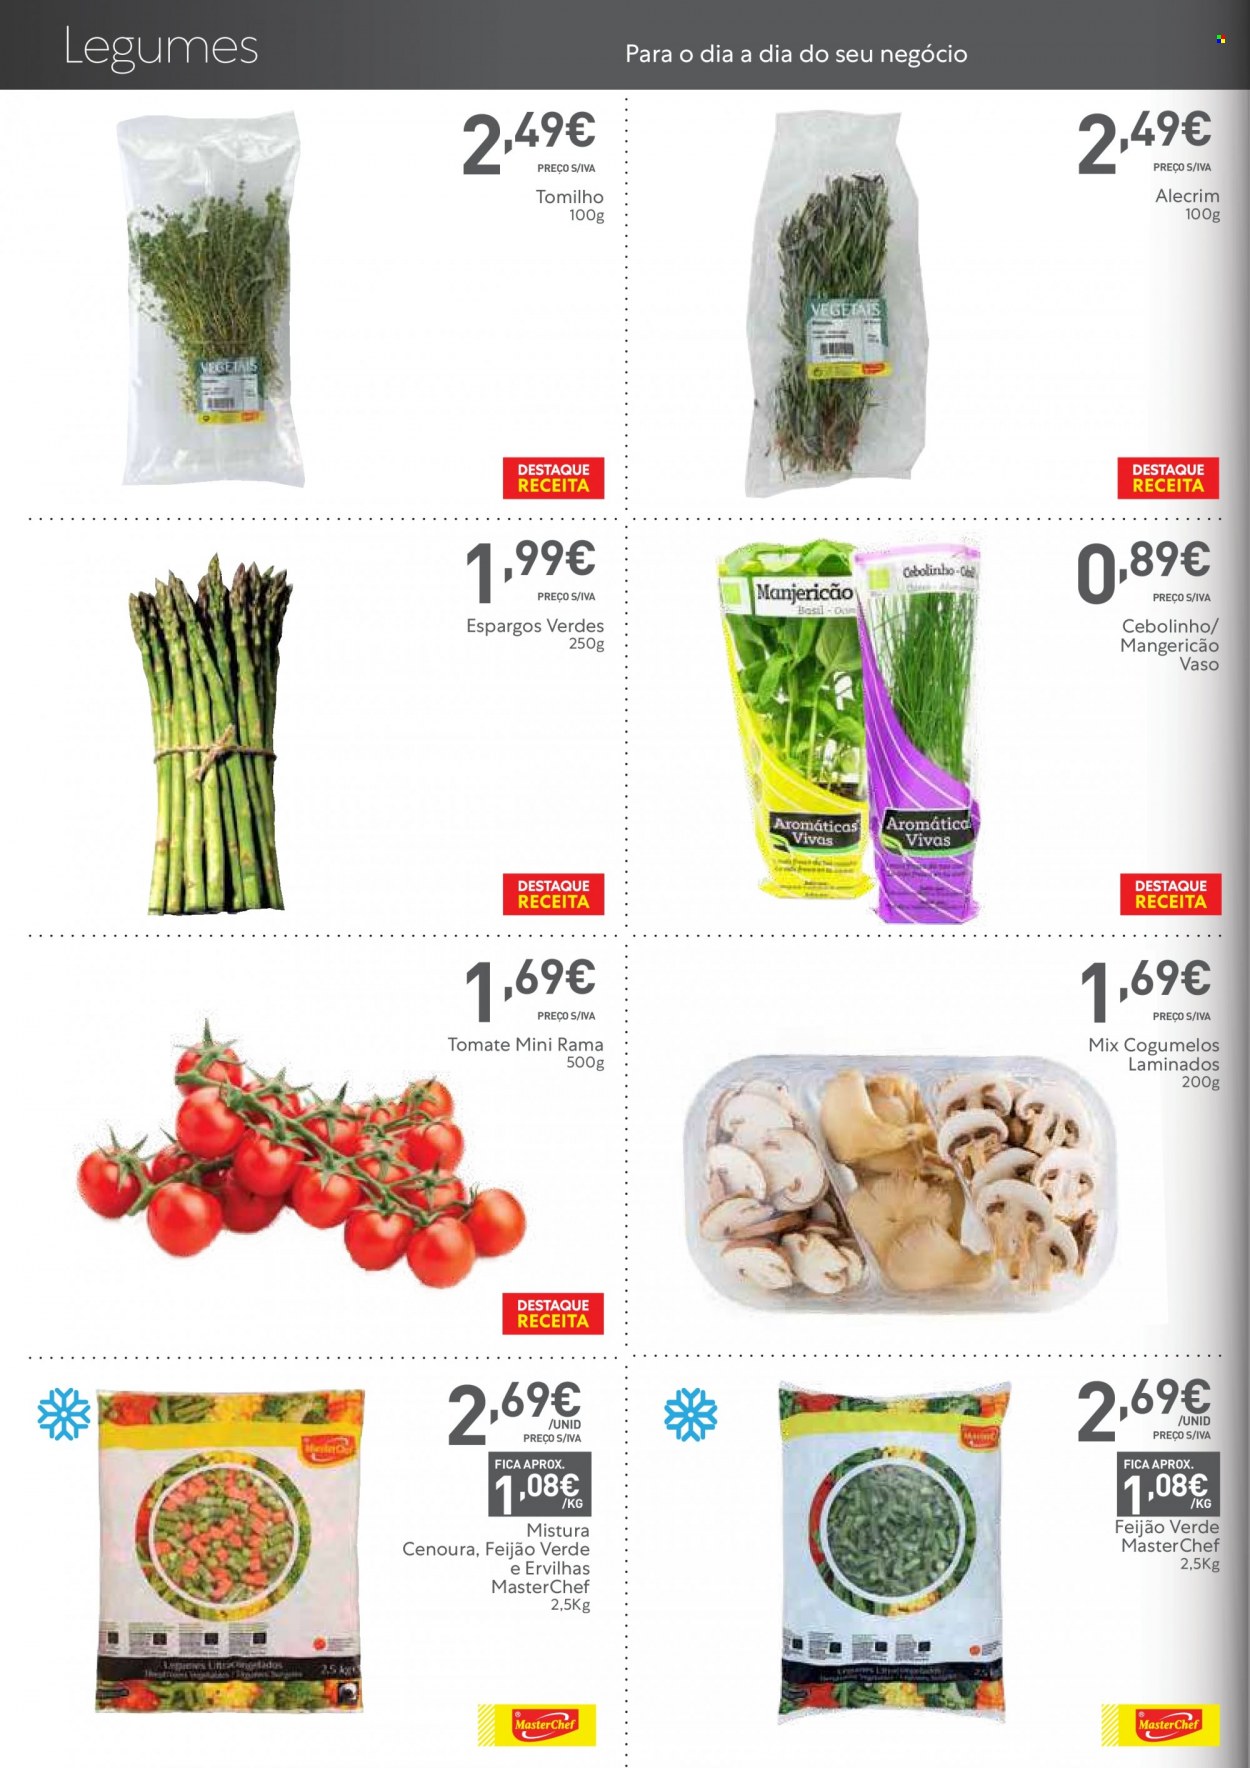 thumbnail - Folheto Recheio - 16.9.2021 - 6.10.2021 - Produtos em promoção - ervilha, aspargo, feijão verde, legumes, feijão, espargos, cogumelo. Página 6.